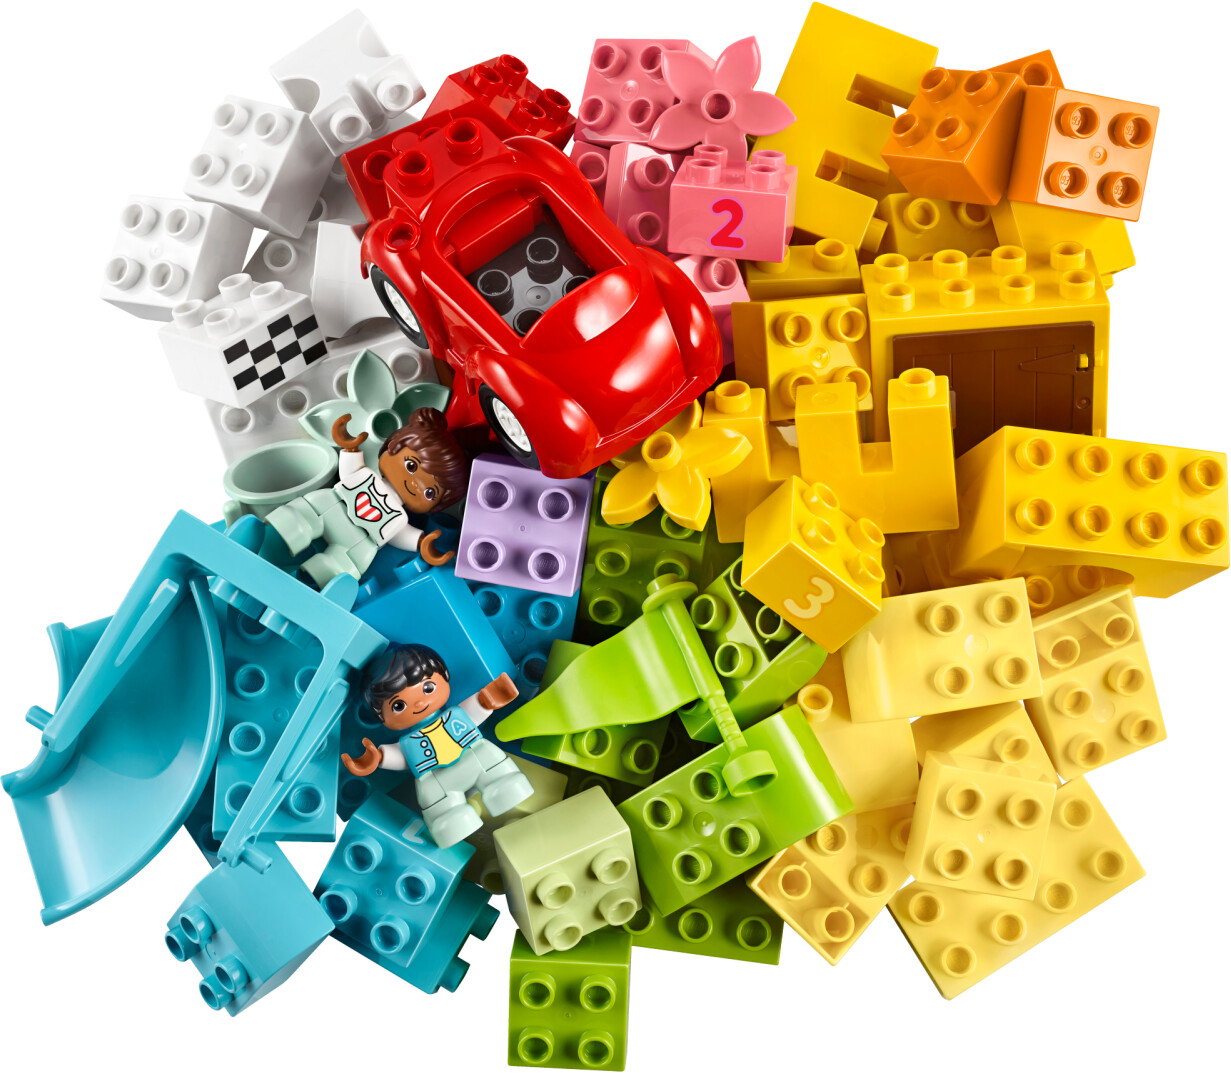 Lego 10913 duplo classic la boîte de briques jeu de construction avec  rangement jouet éducatif pour bébé de 1 an et plus - La Poste